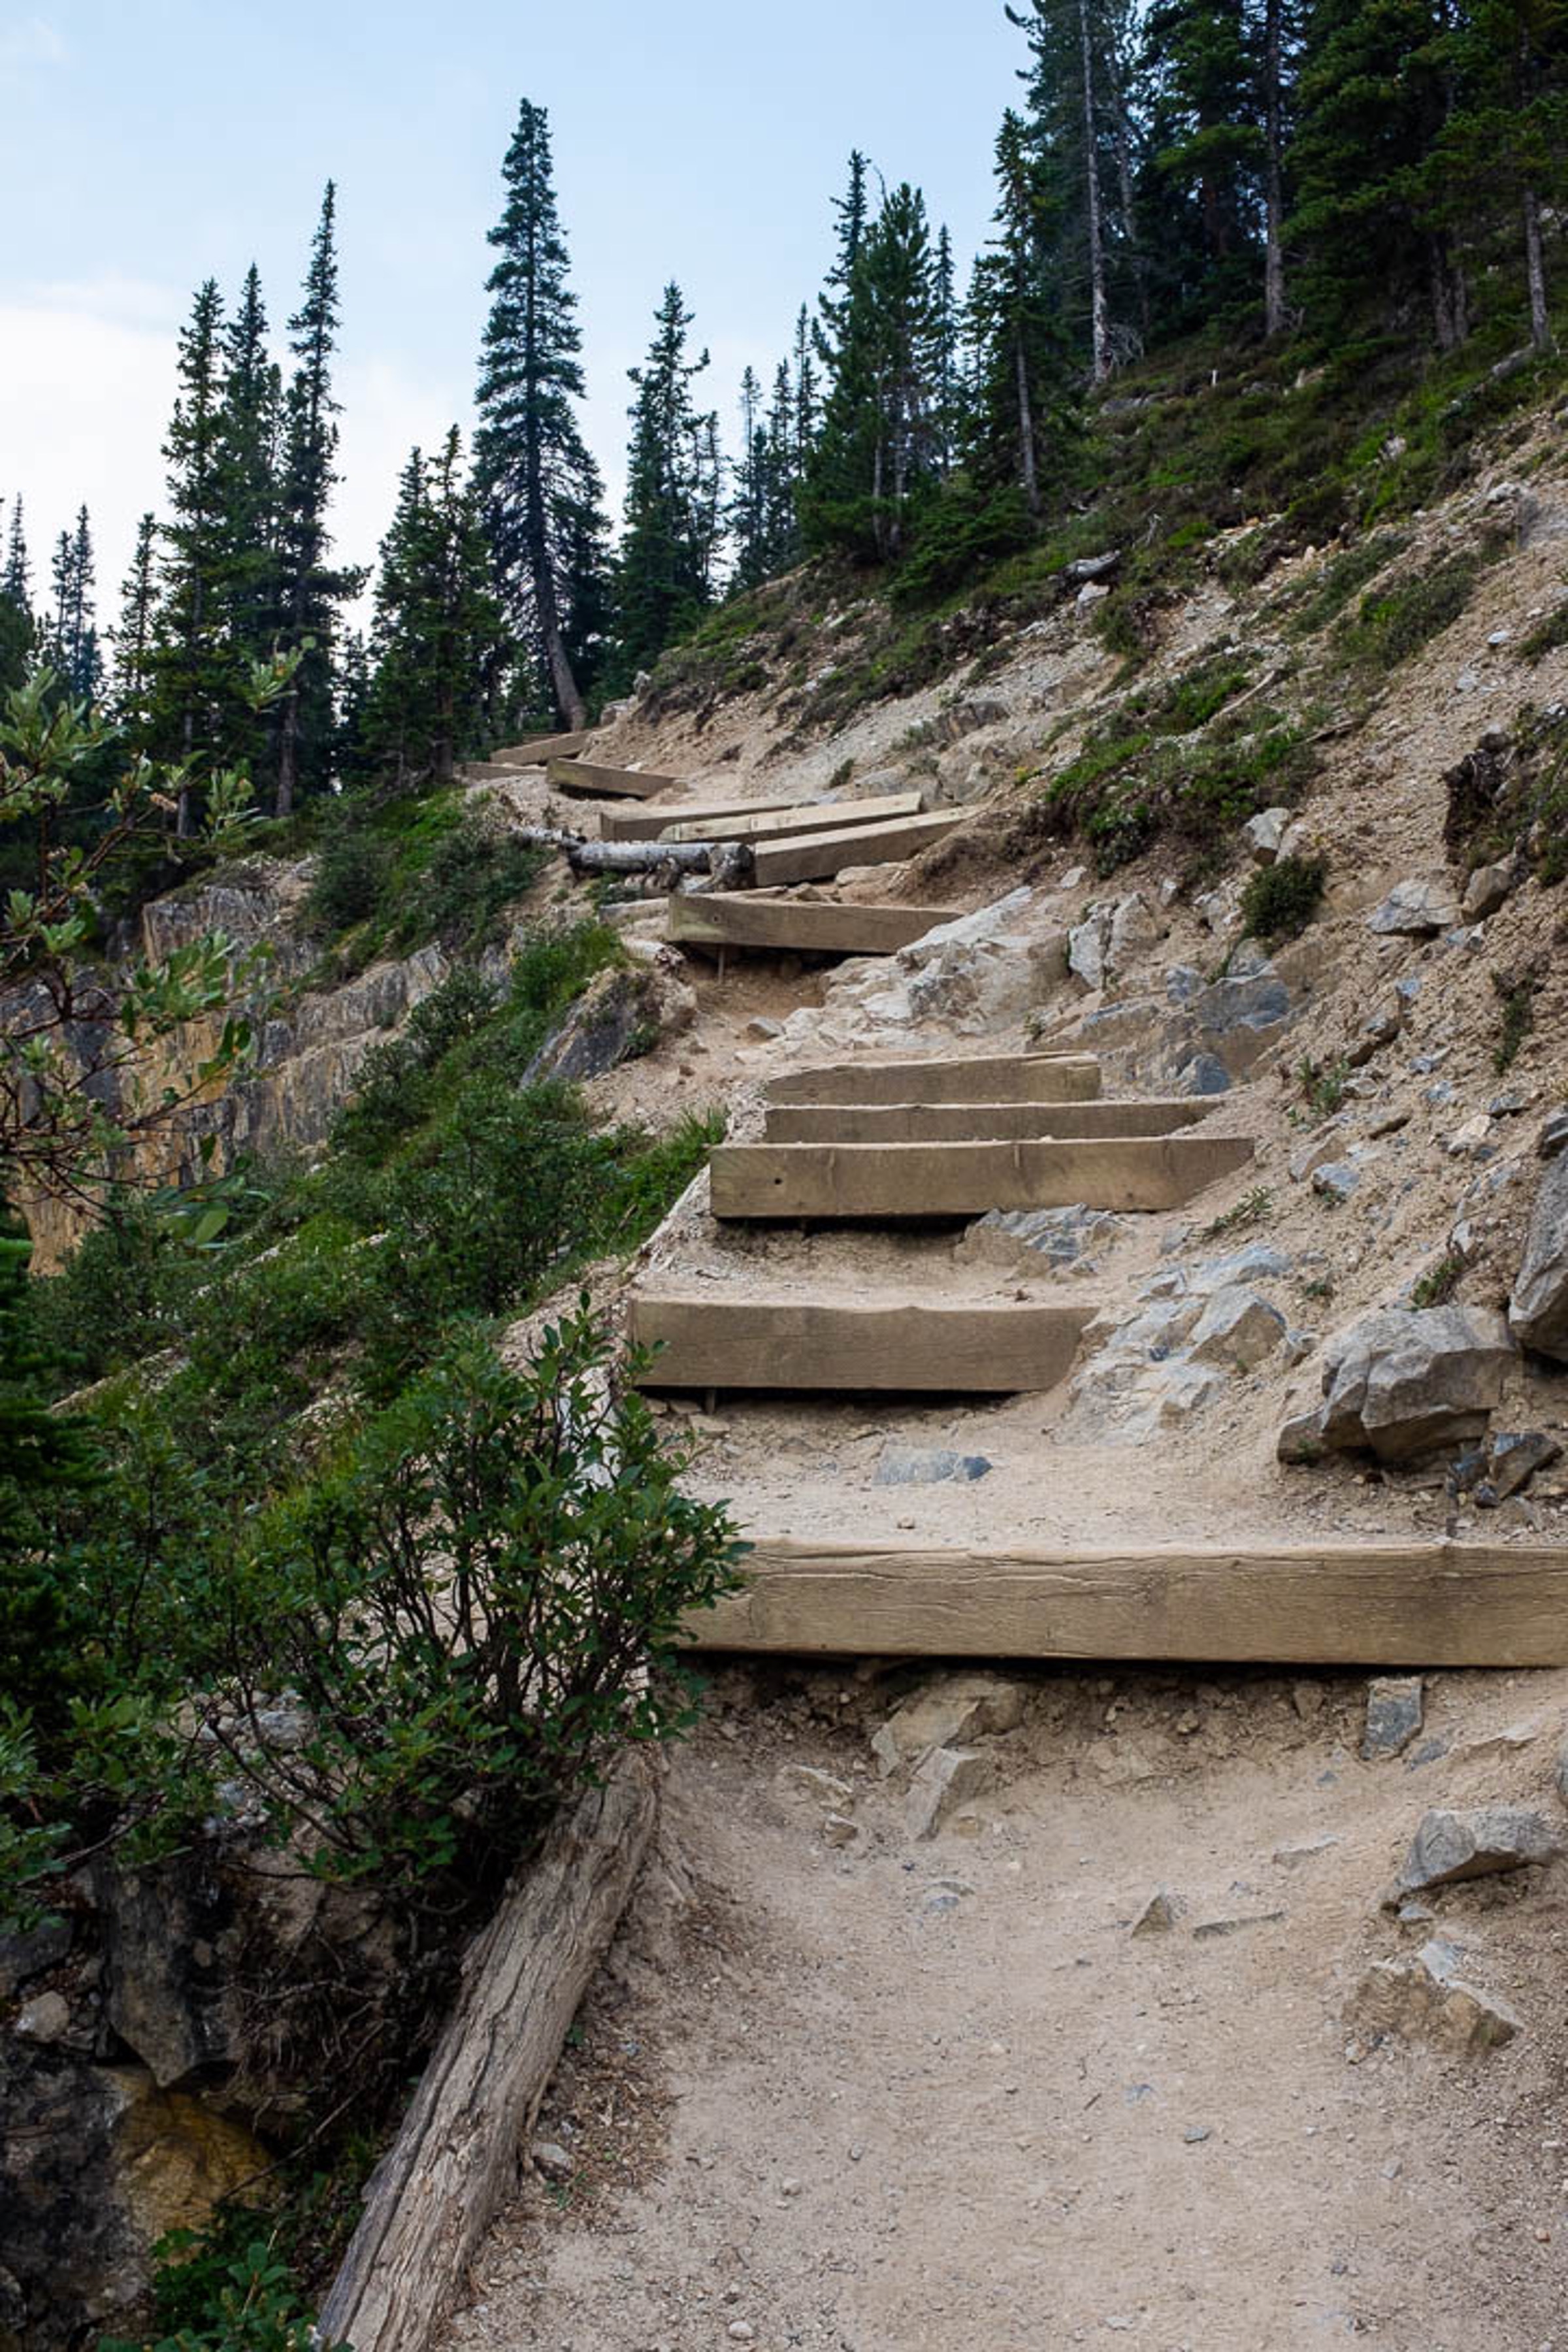 Steep, uneven and irregular man made wodden steps cut into a mountainside